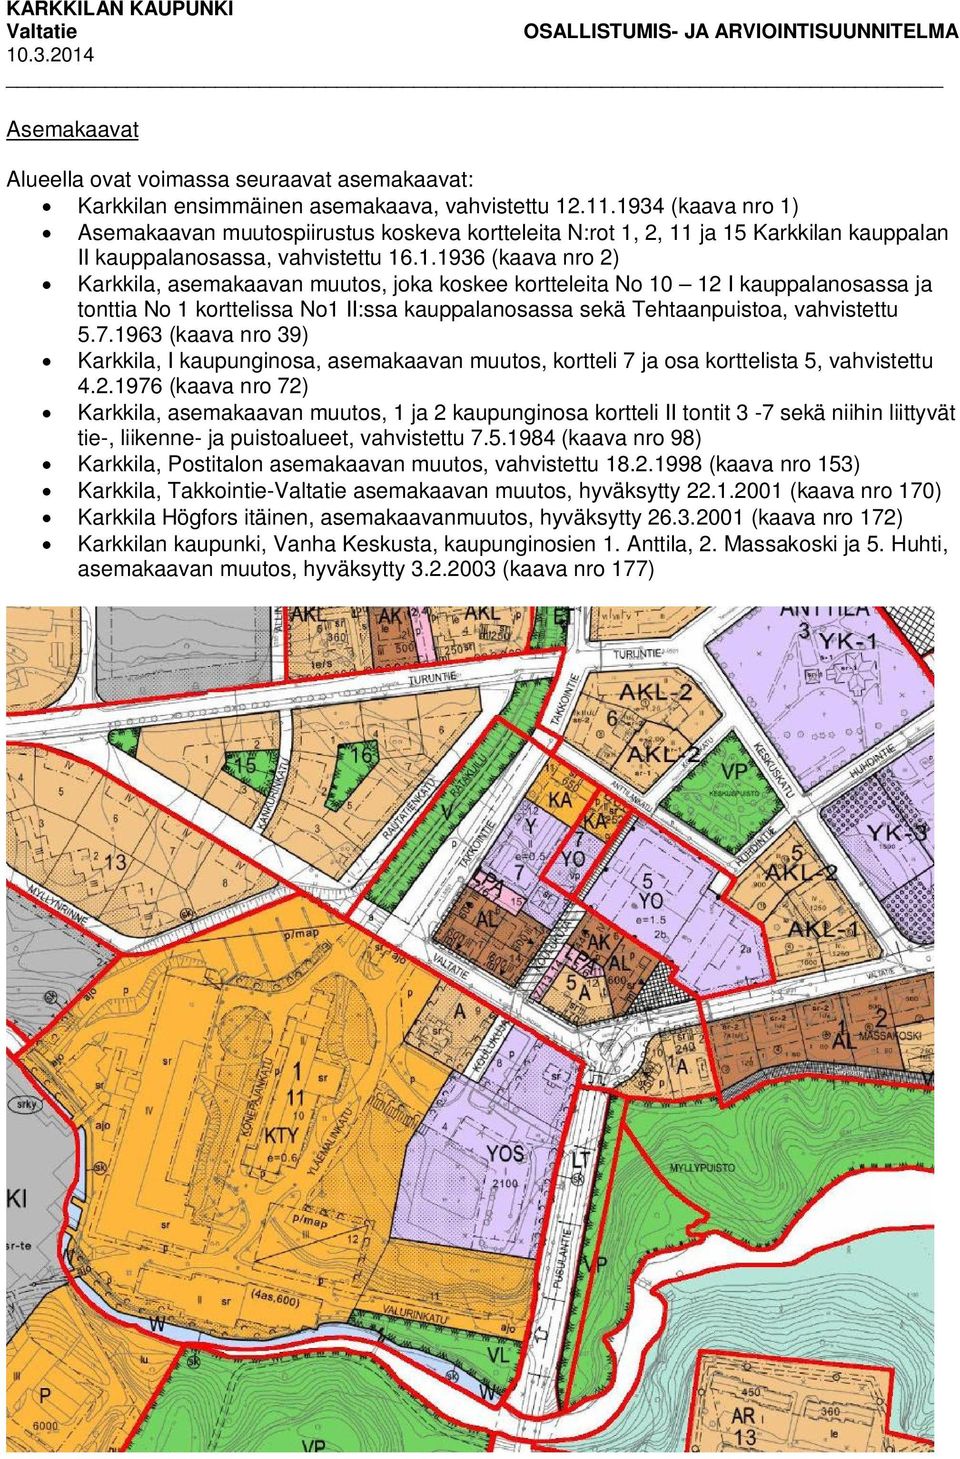 7.1963 (kaava nro 39) Karkkila, I kaupunginosa, asemakaavan muutos, kortteli 7 ja osa korttelista 5, vahvistettu 4.2.